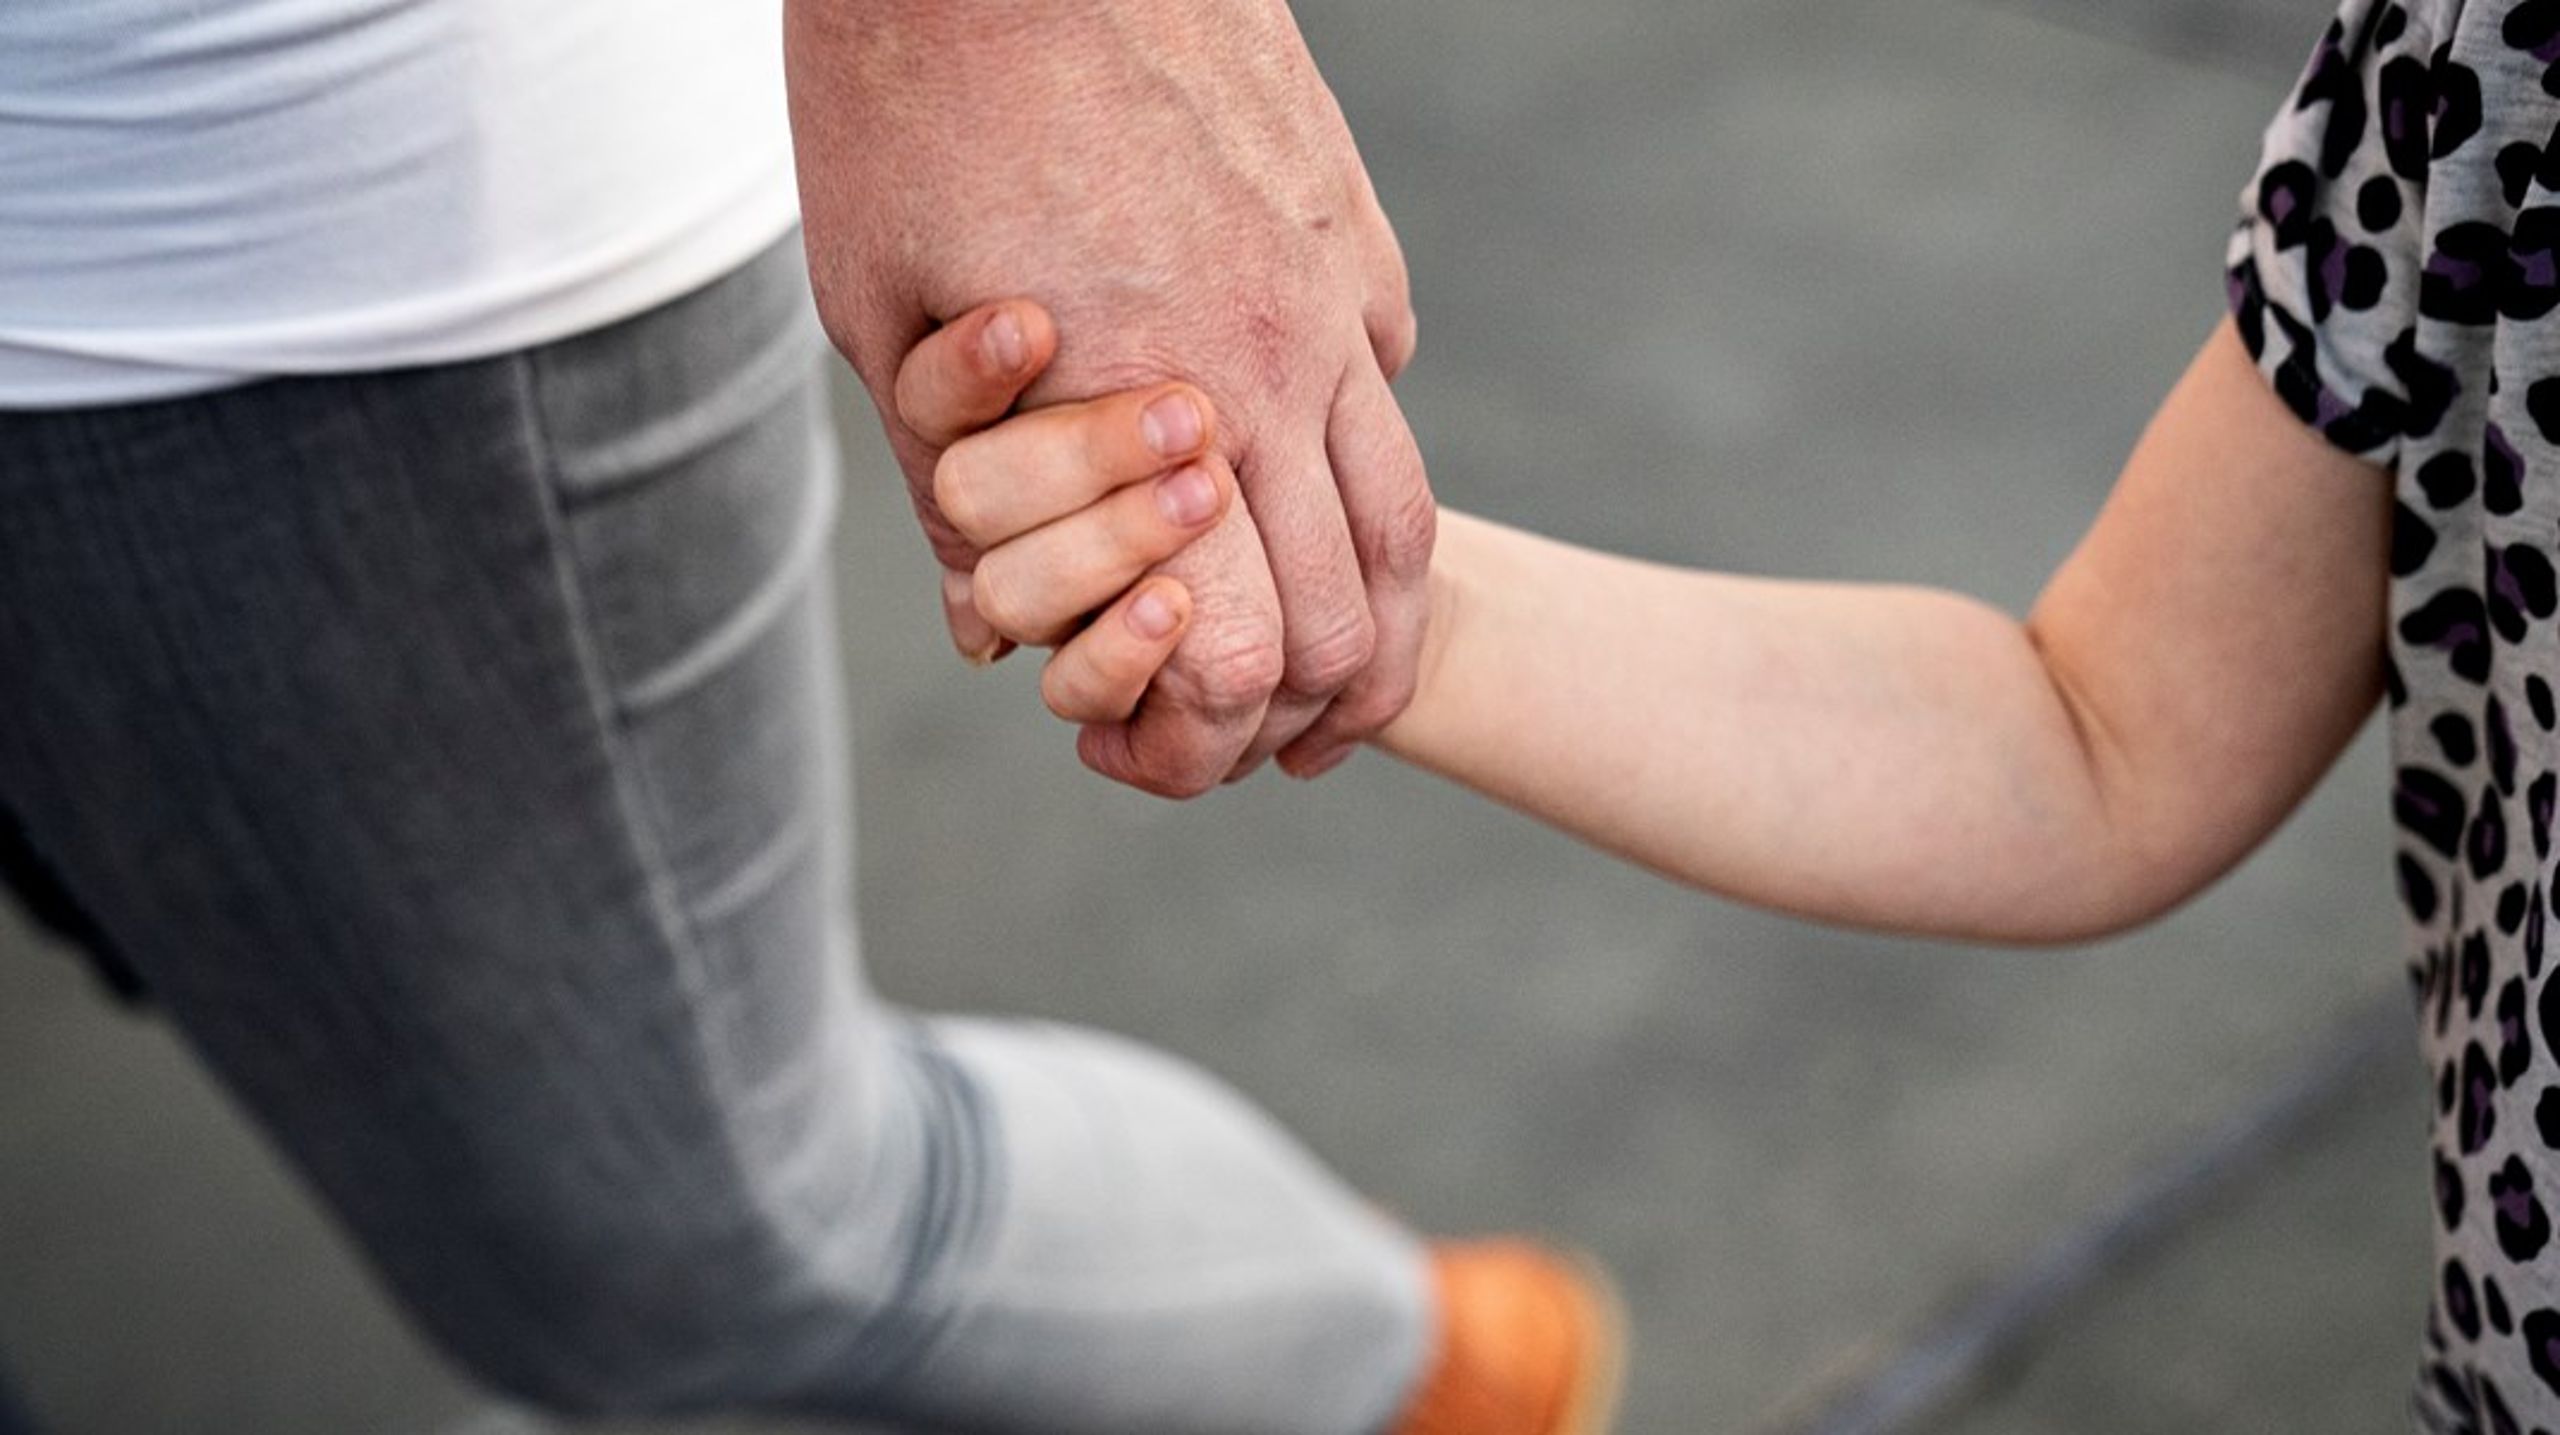 USA, Holland og Spanien har allerede indført begrebet i lovgivningen og implementeret en grundig undersøgelsesproces, der kan afsløre om et barn er blevet udsat for forældrefremmedgørelse, skriver Torben Haugaard og Kristian Larsen.